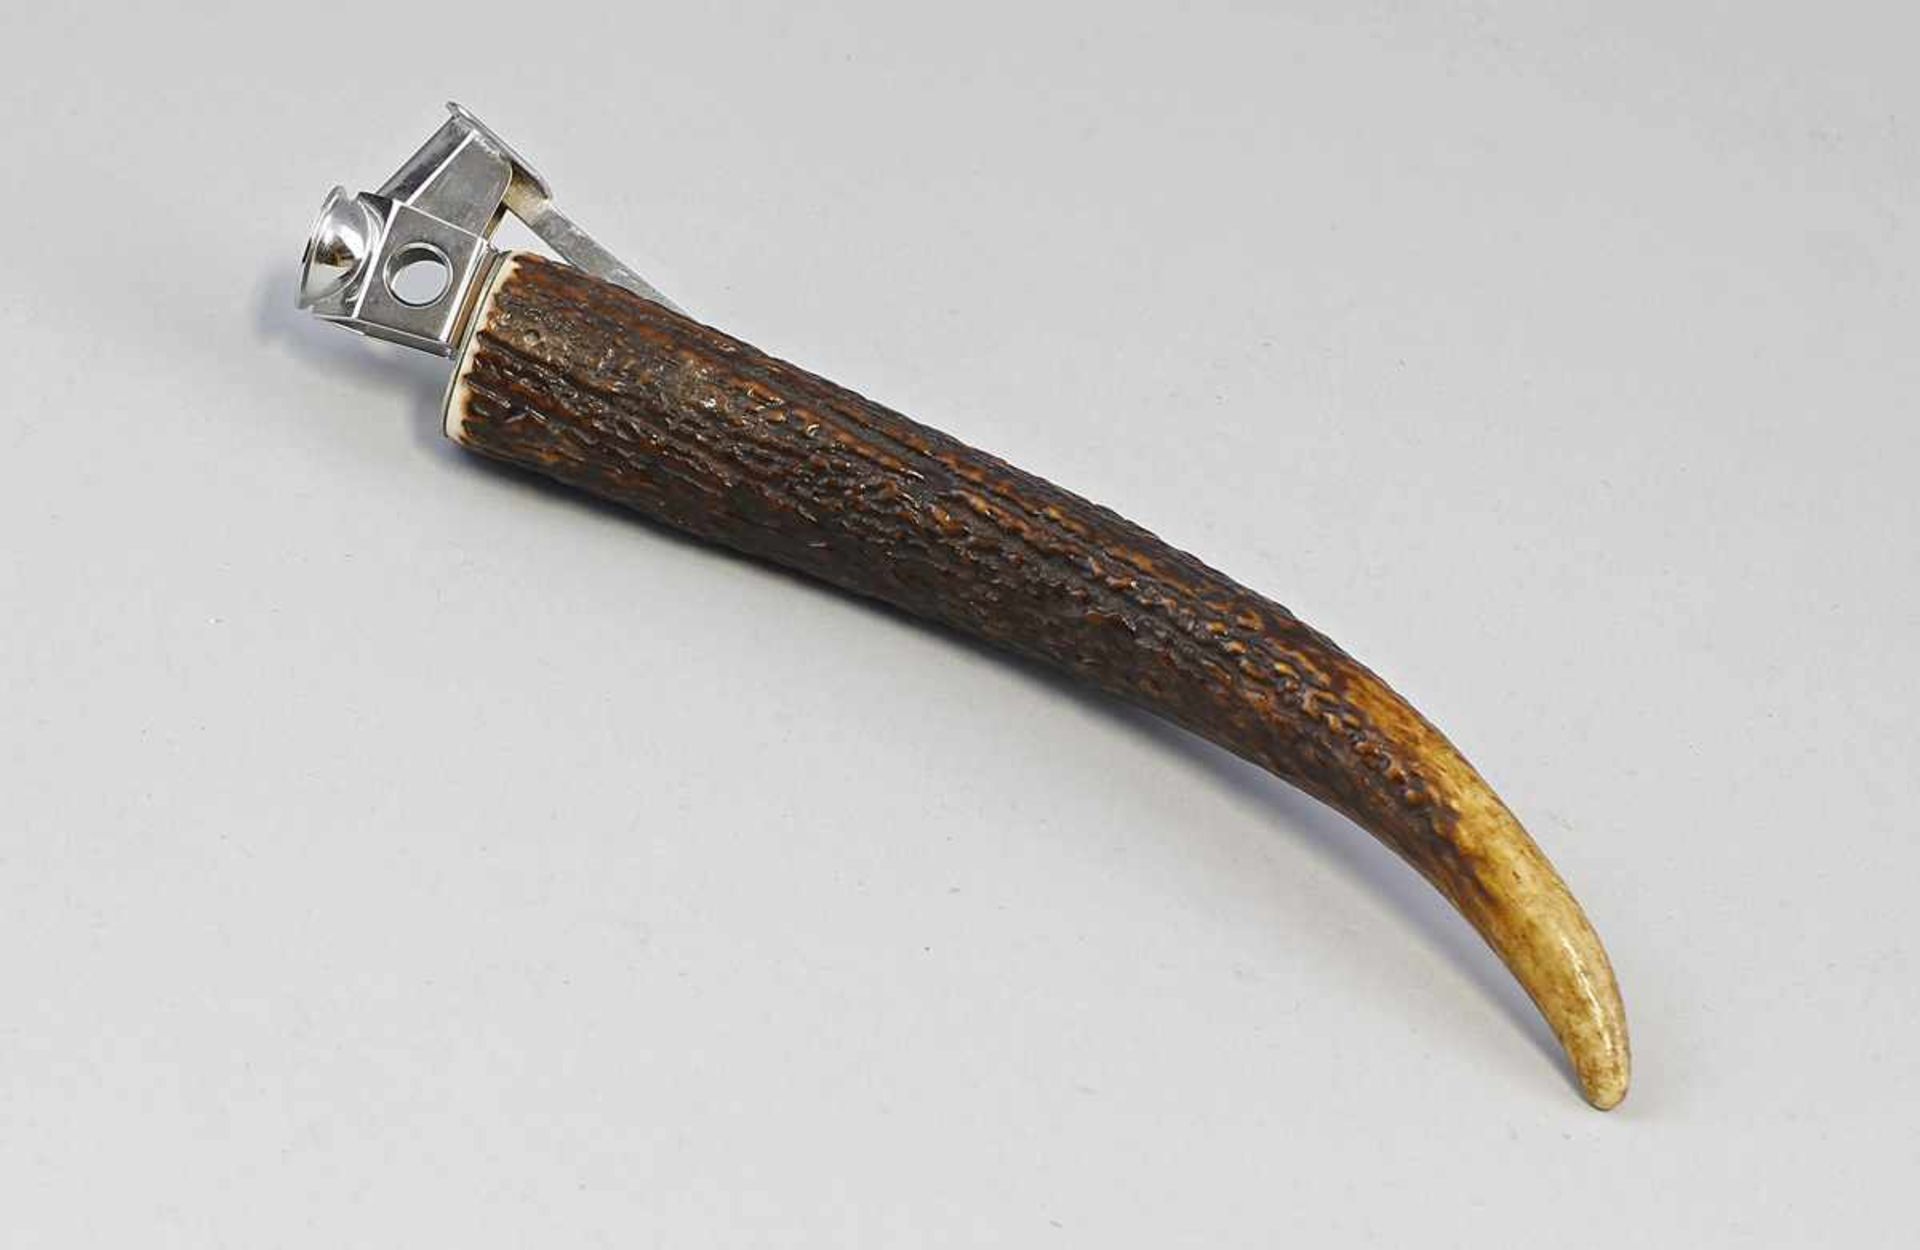 Jagdlicher Zigarrenschneider.. aus Geweihteil gefertigt, verchromte Montur, L 22 cm, Alters- und